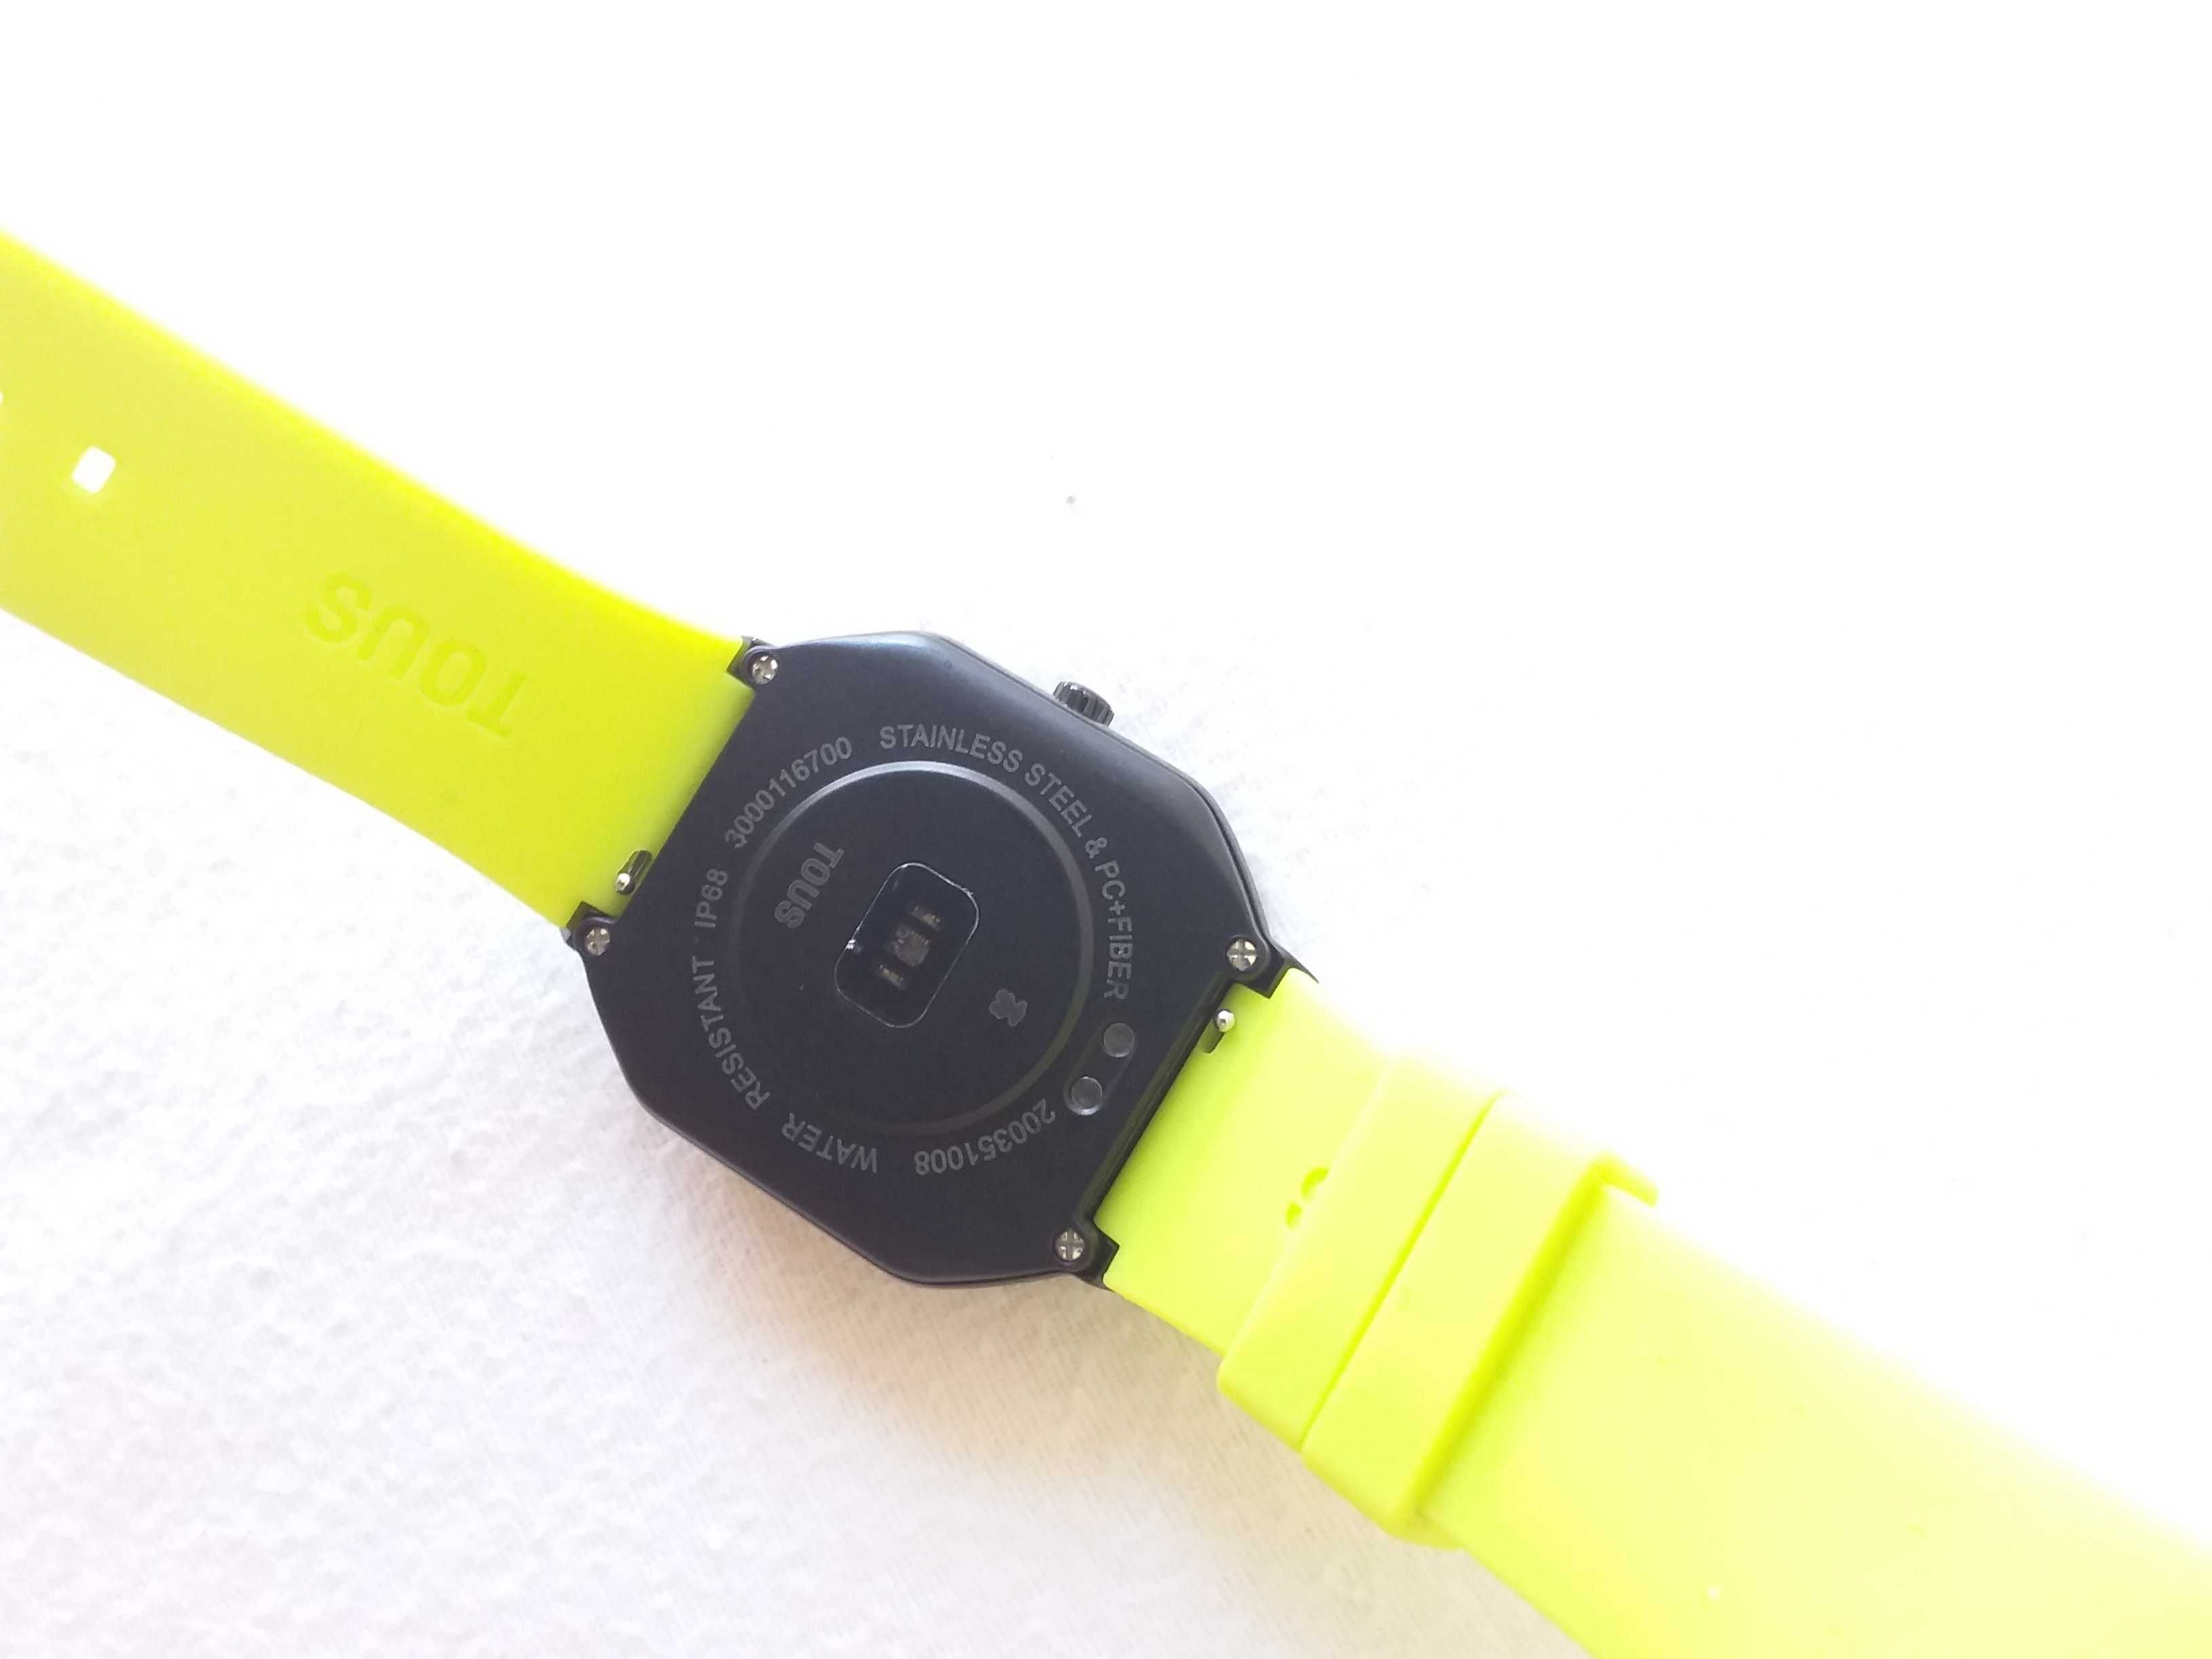 Relógio smartwatch, marca Tous, coleção B-connect, novo com garantia